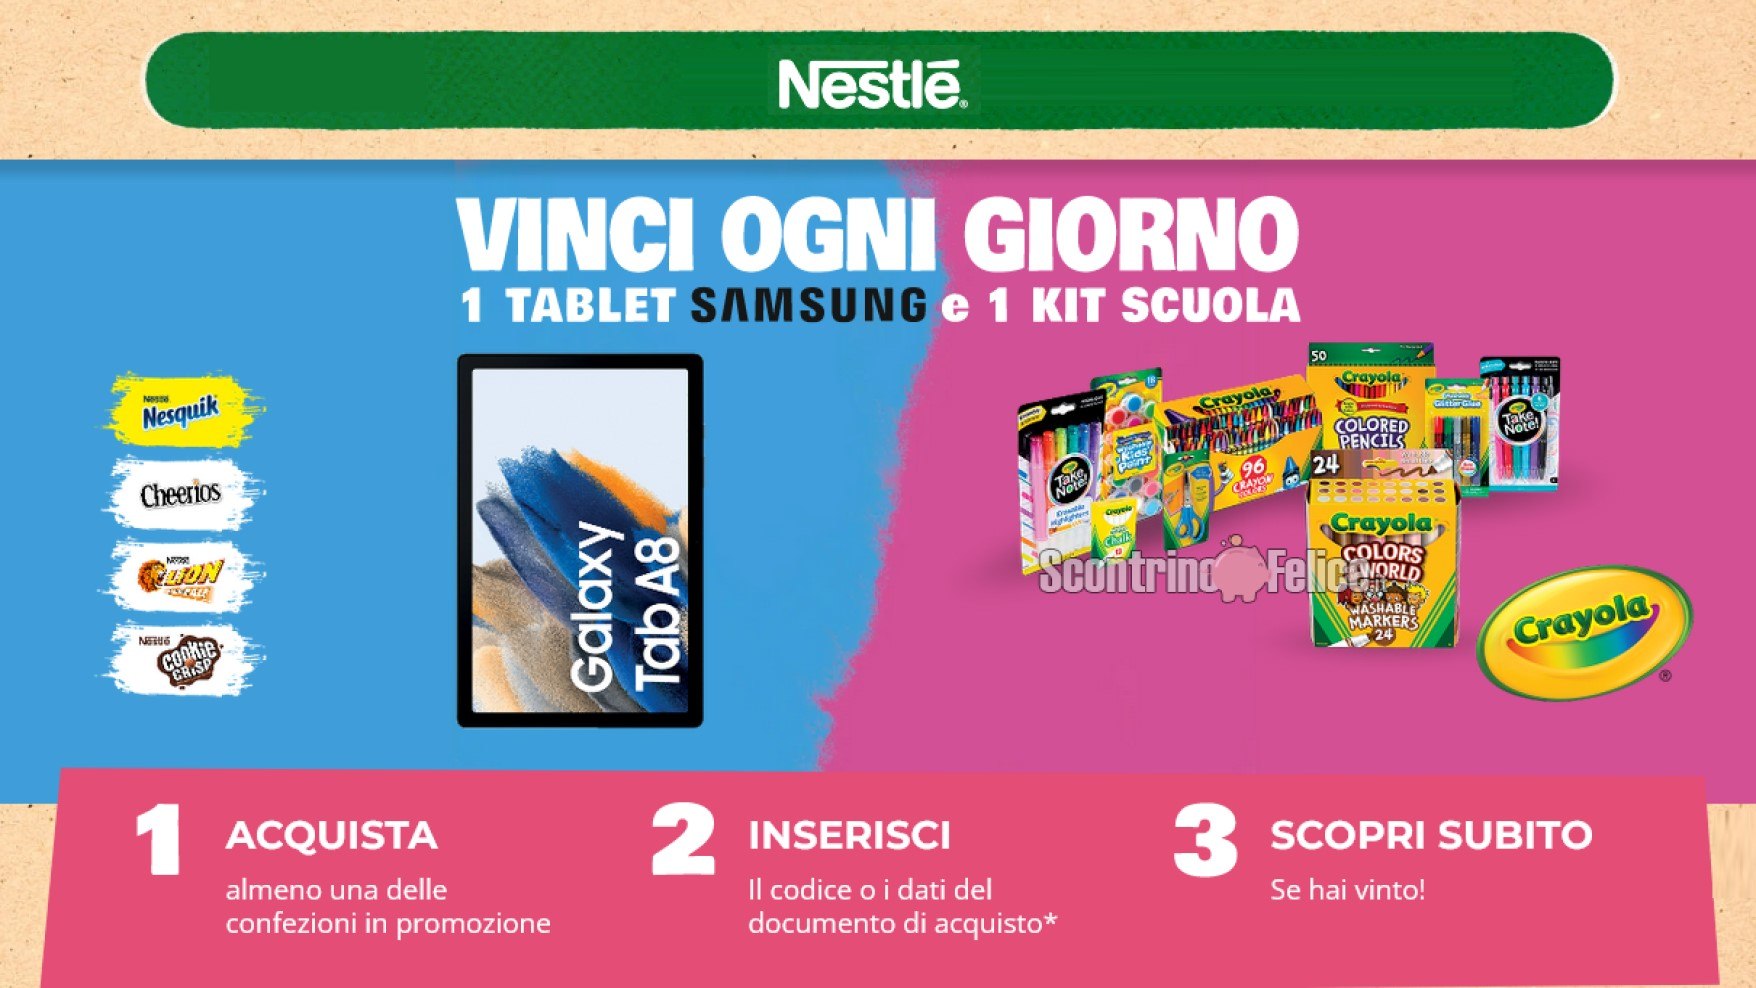 Concorso Nesquik “Vinci la scuola”: in palio Kit Crayola e Tablet Samsung